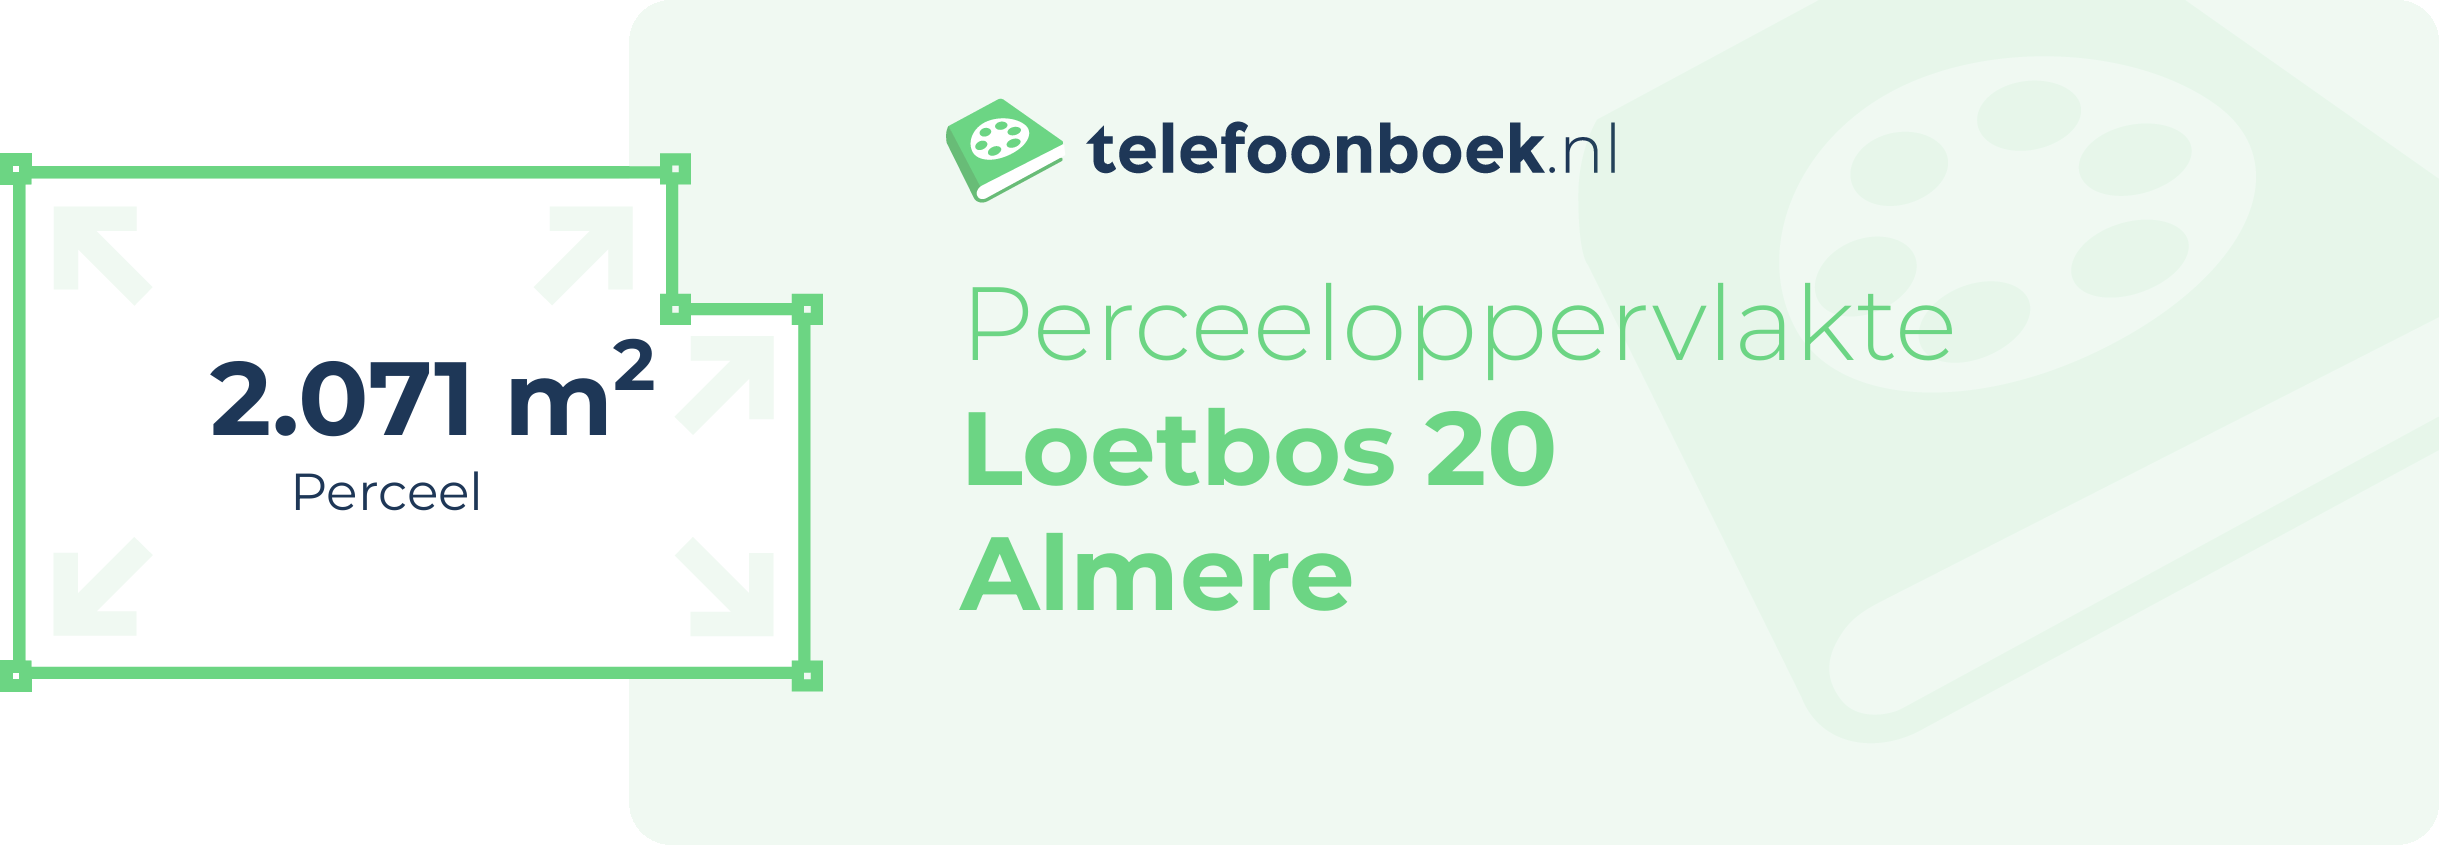 Perceeloppervlakte Loetbos 20 Almere